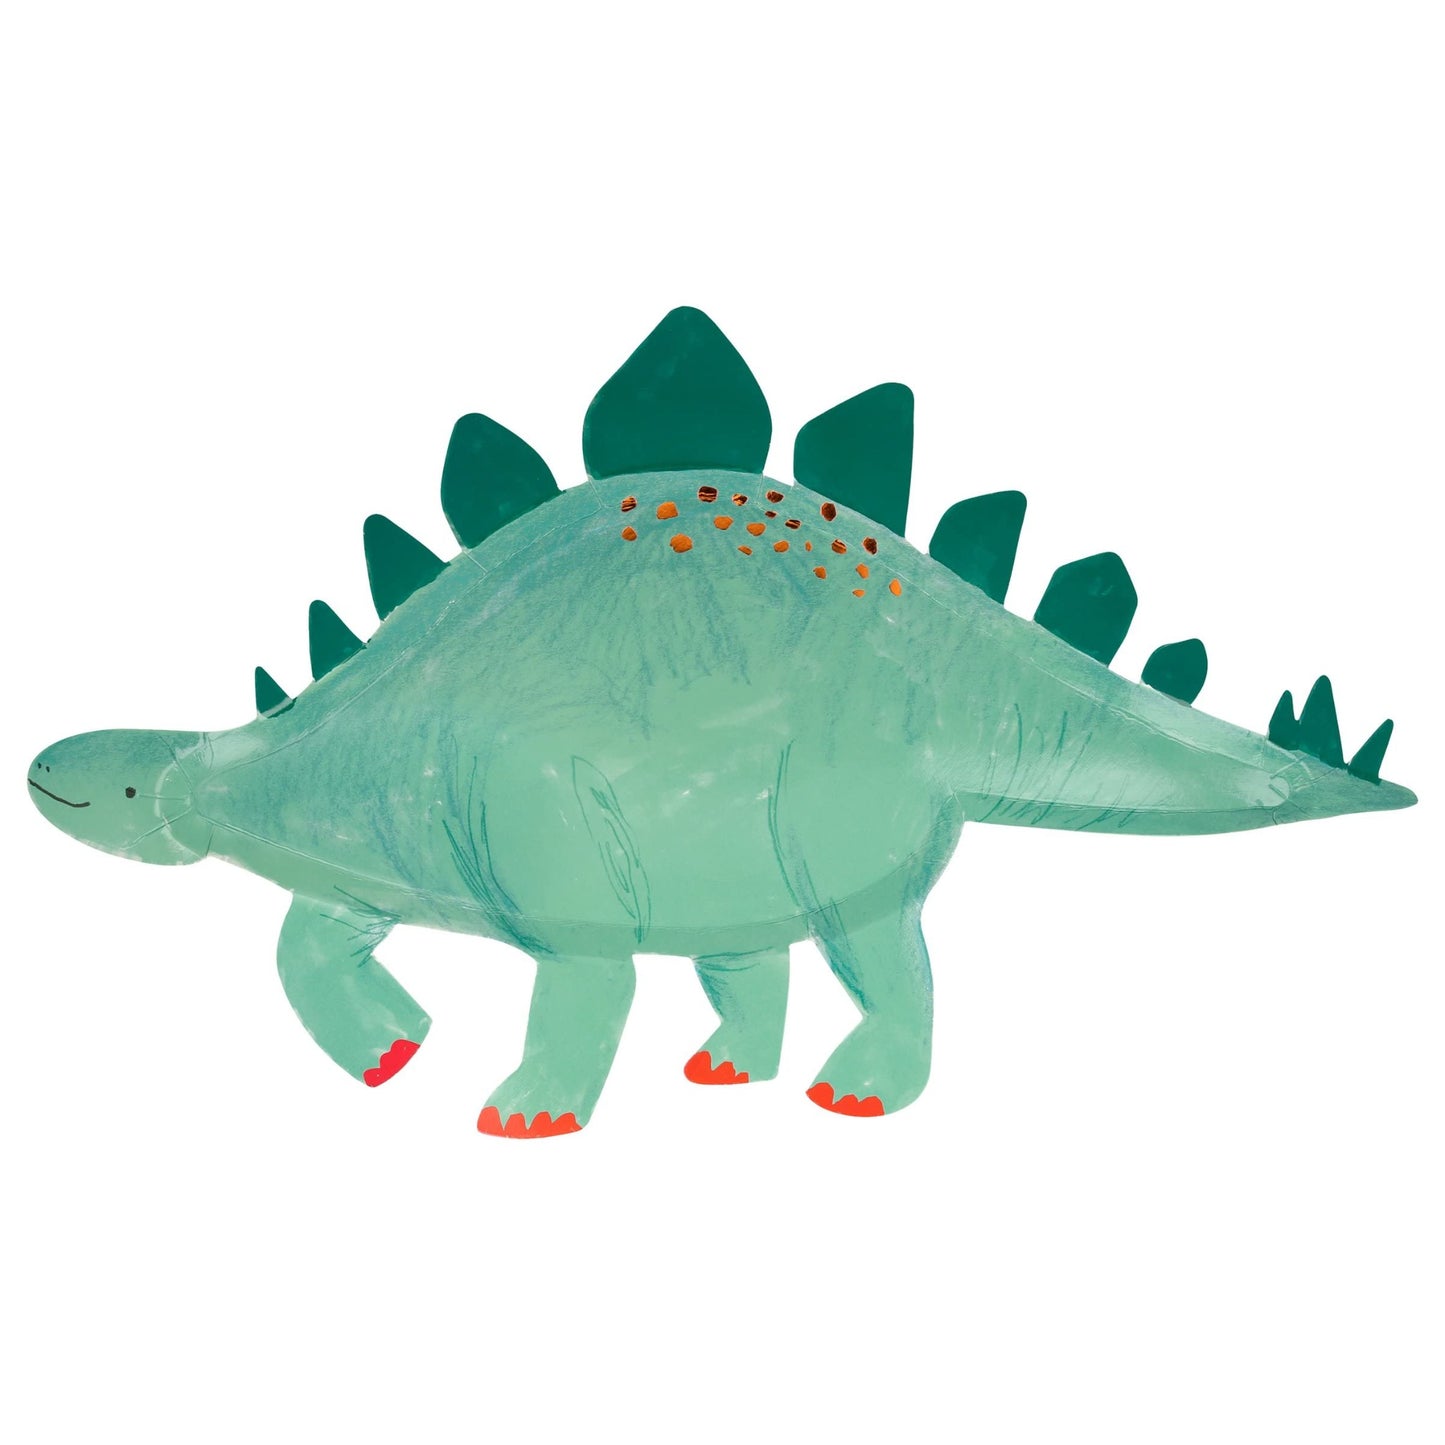 Platos de estegosaurio